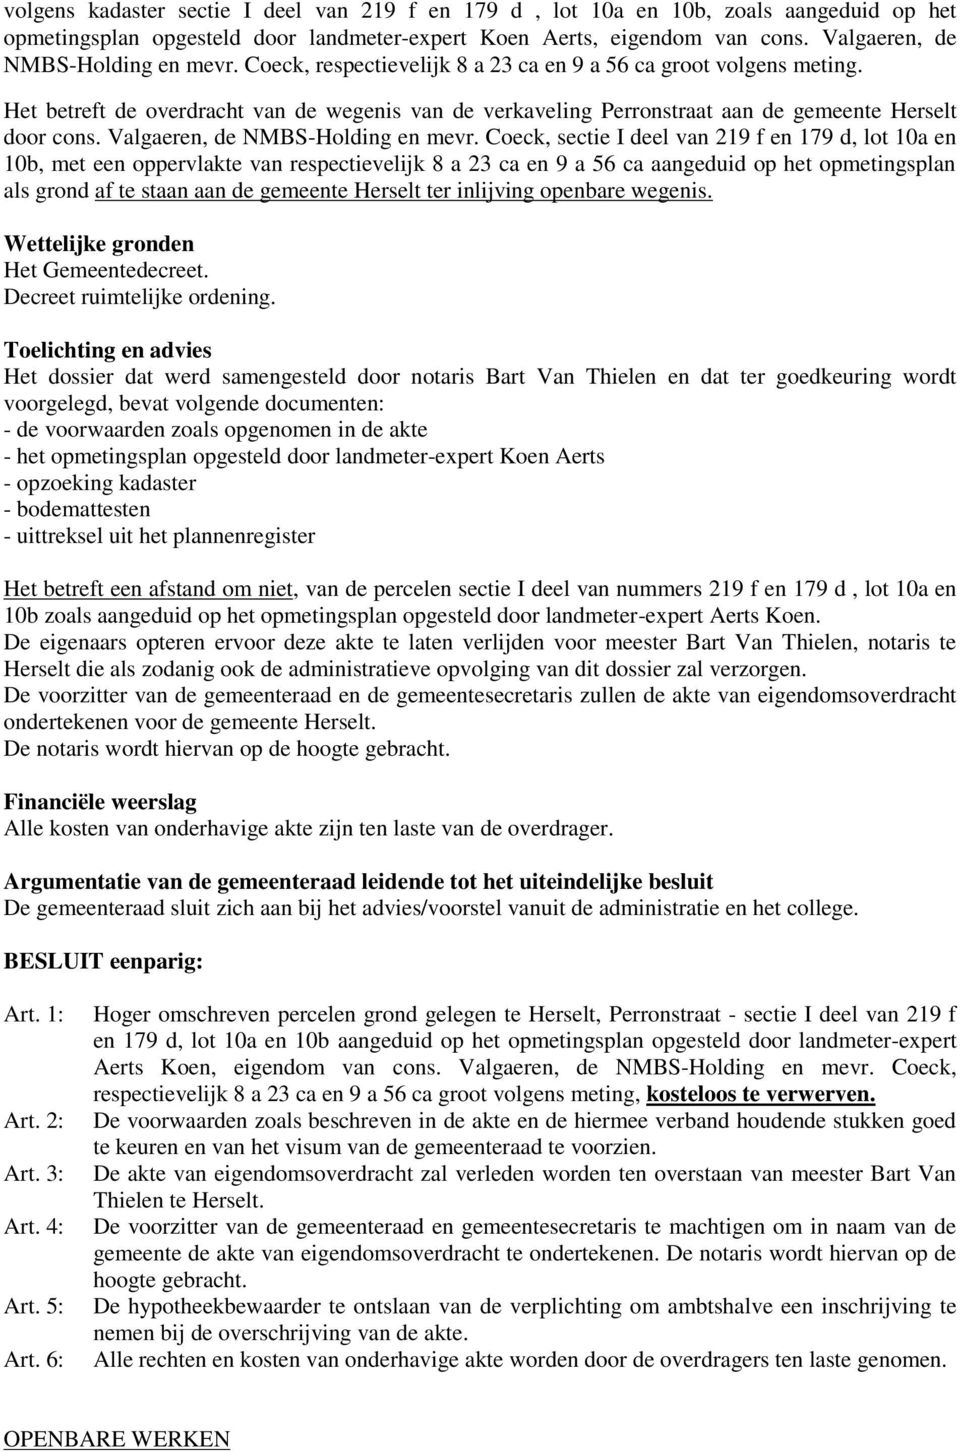 Het betreft de overdracht van de wegenis van de verkaveling Perronstraat aan de gemeente Herselt door cons. Valgaeren, de NMBS-Holding en mevr.